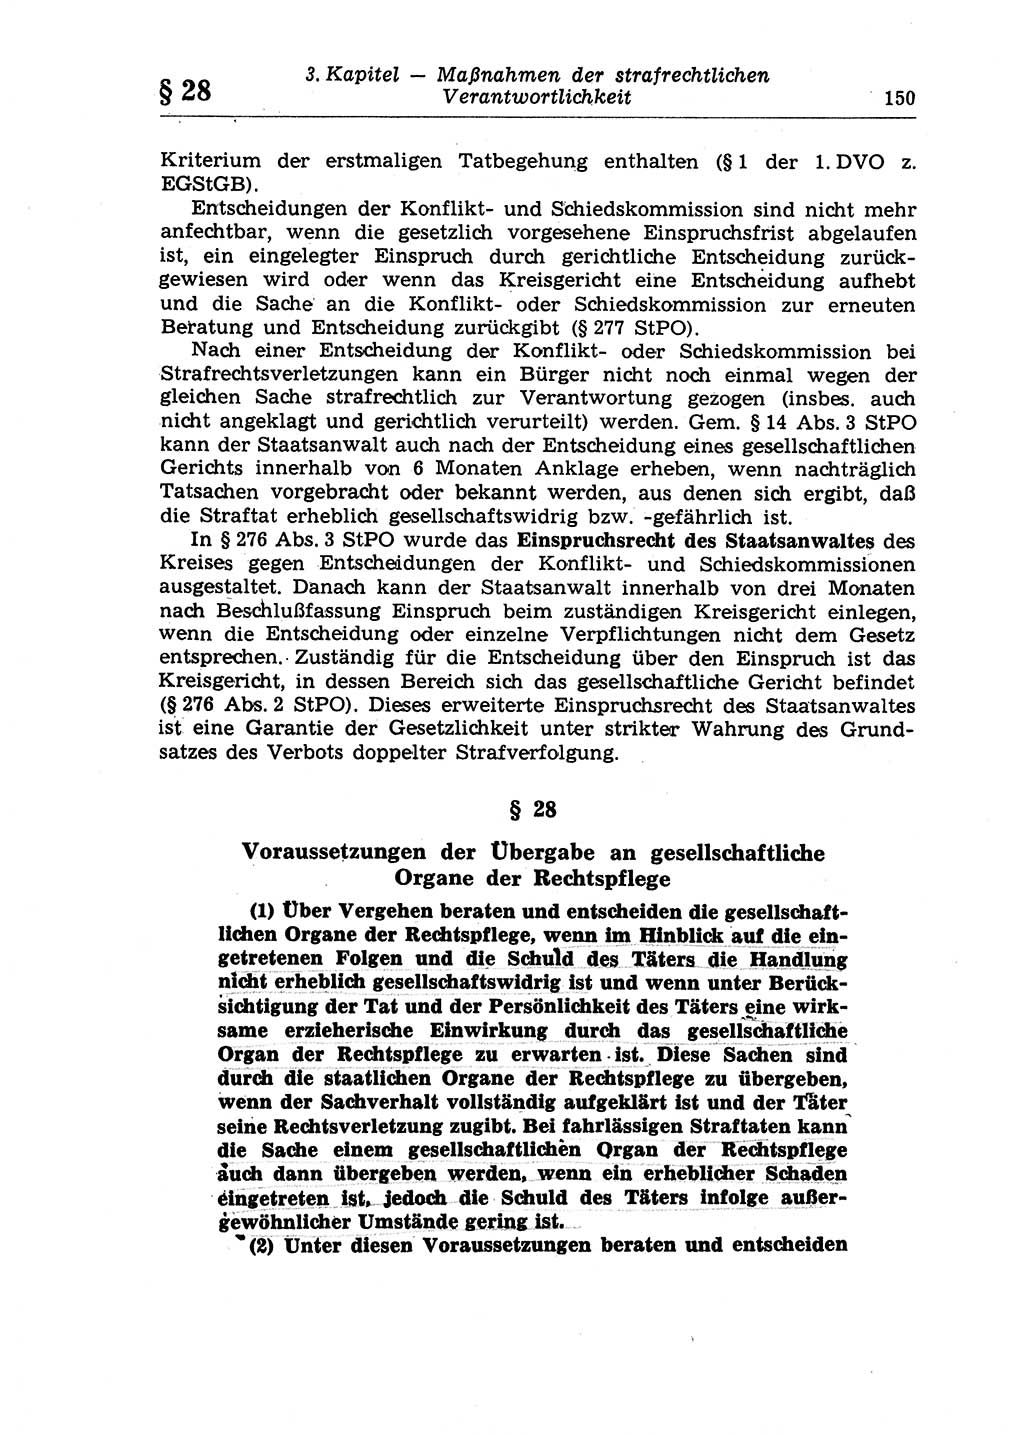 Strafrecht der Deutschen Demokratischen Republik (DDR), Lehrkommentar zum Strafgesetzbuch (StGB), Allgemeiner Teil 1970, Seite 150 (Strafr. DDR Lehrkomm. StGB AT 1970, S. 150)